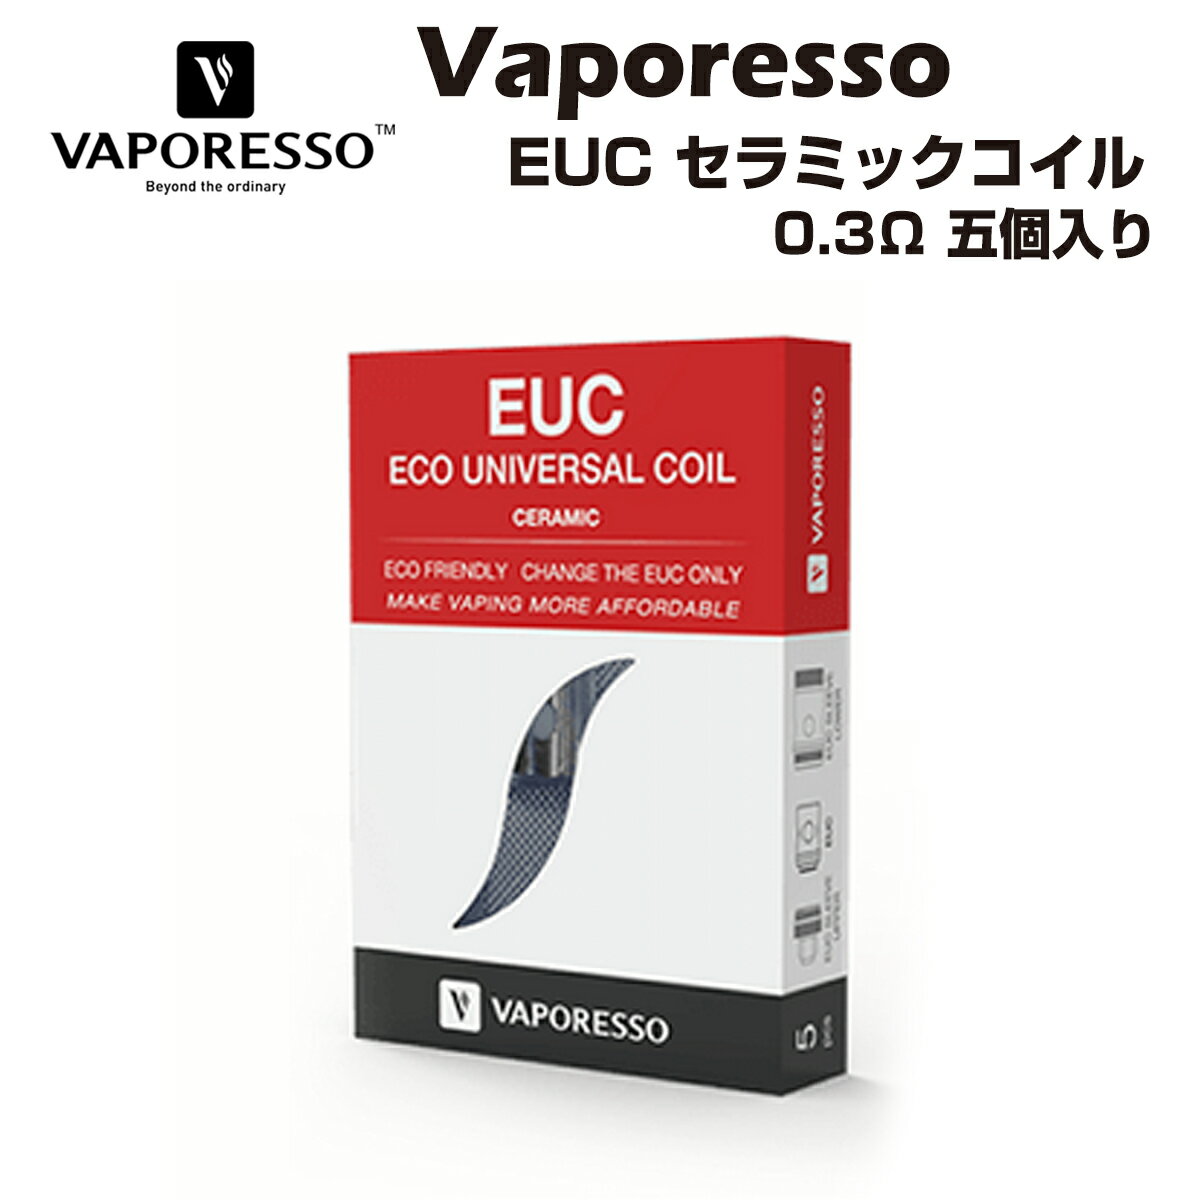 【送料無料】 Vaporesso EUC CCELL SS316L 0.3Ω (35-40W) 5個 セラミック コイル ベポレッソ Eco Universal Coil 電子タバコ 電子たばこ ベイプ vape 交換用コイル